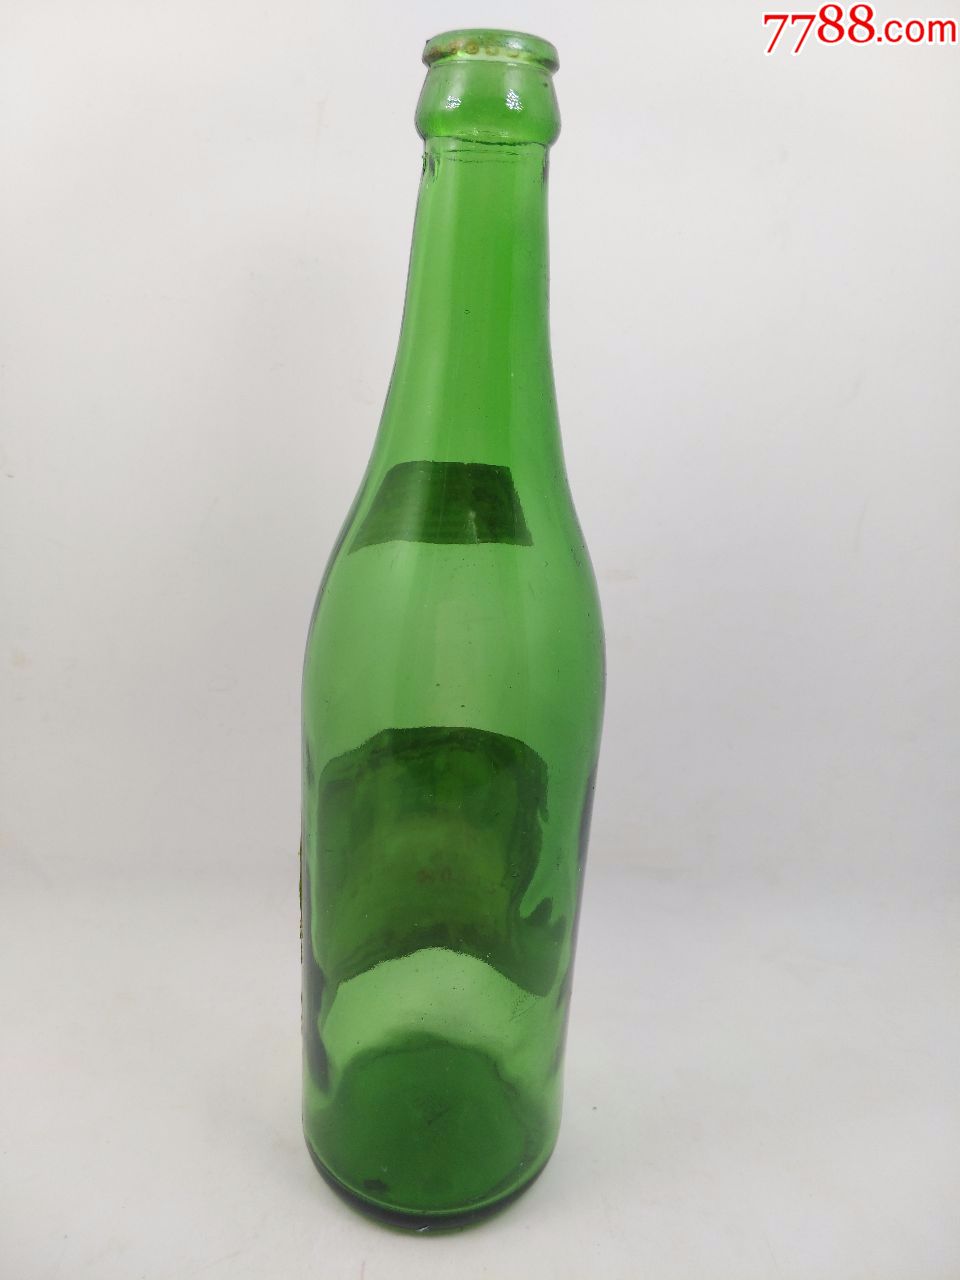 无盖绿瓶玻璃汾酒空瓶,酒标稍有破损